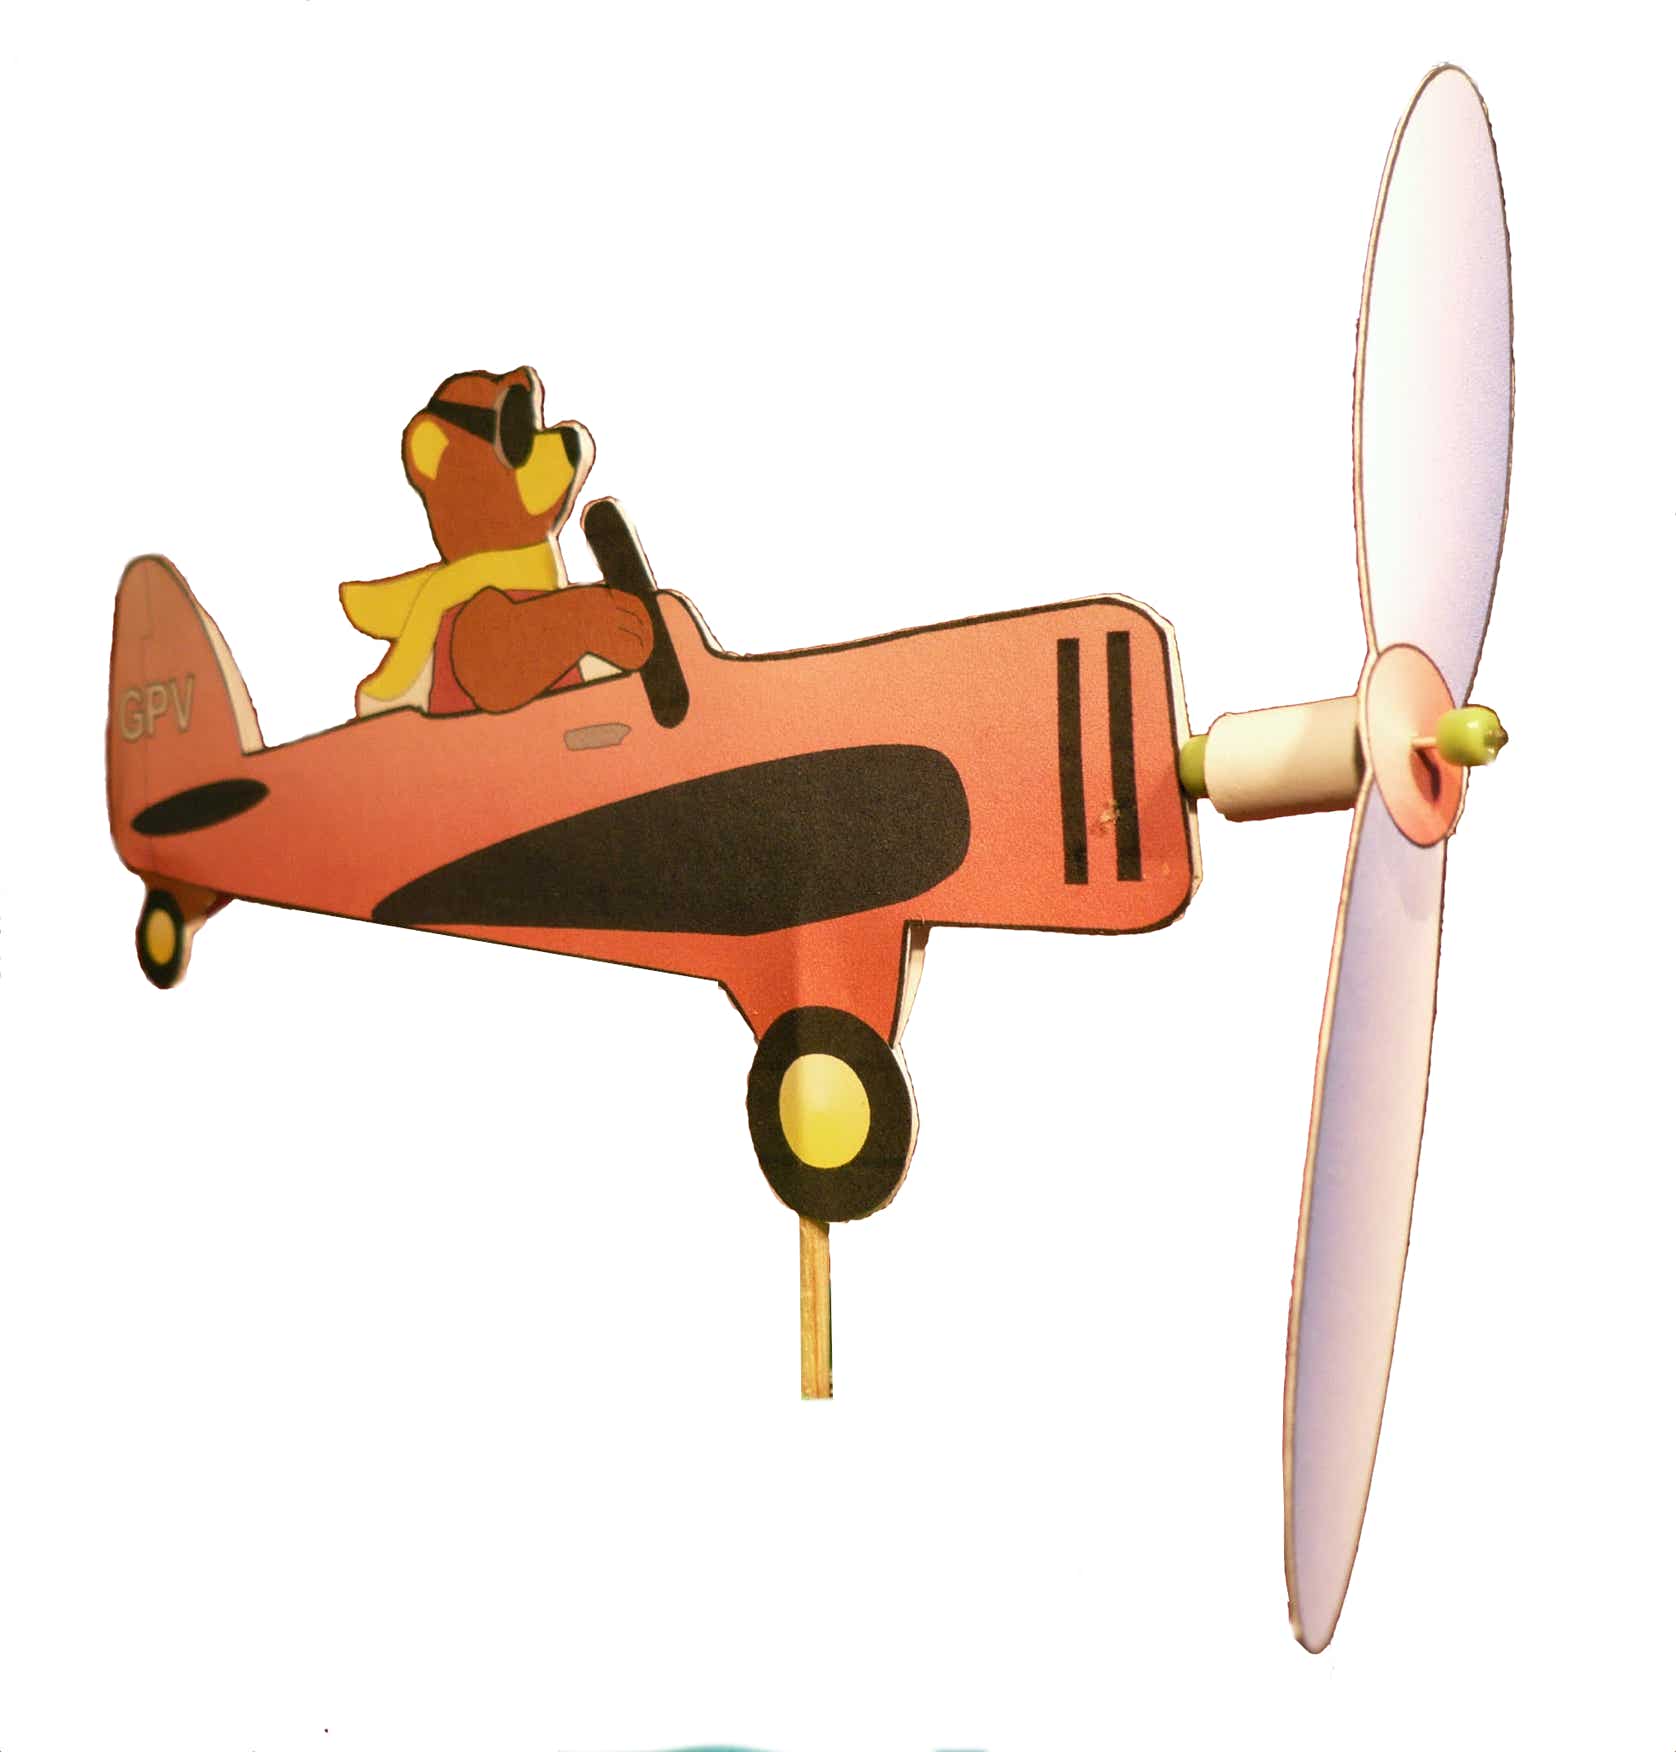 Werkaufgabe mit Papier/Karton: Flugzeug mit Propeller